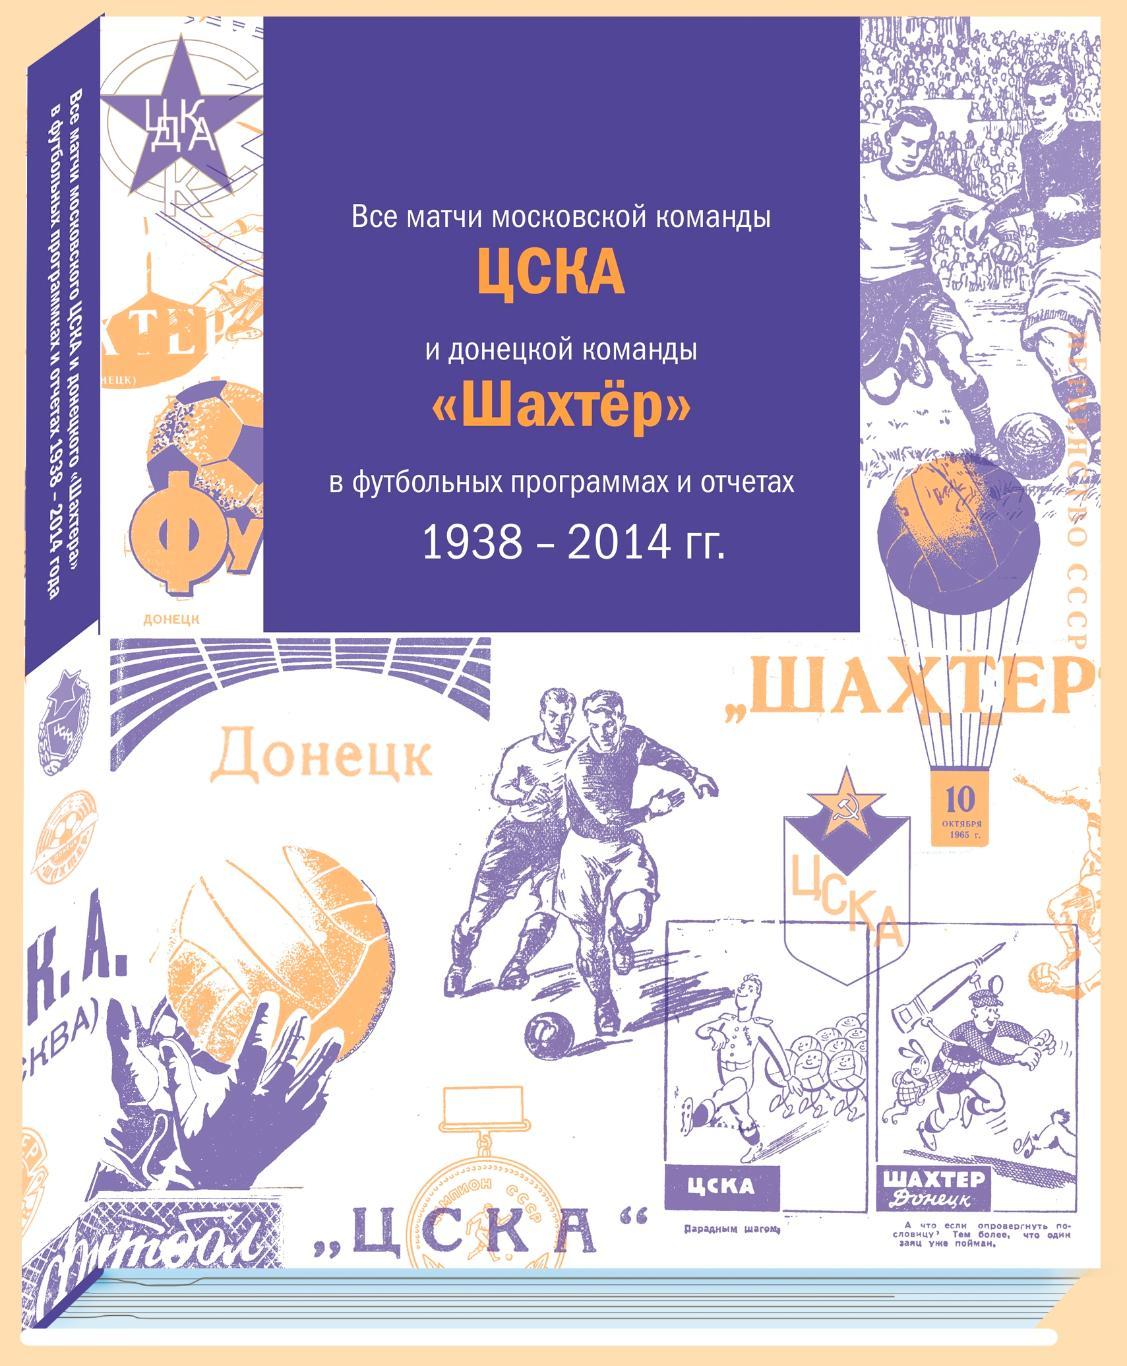 Все матчи команд ЦСКА и Шахтер в футбольных программах и отчетах 1938 - 2014 гг.